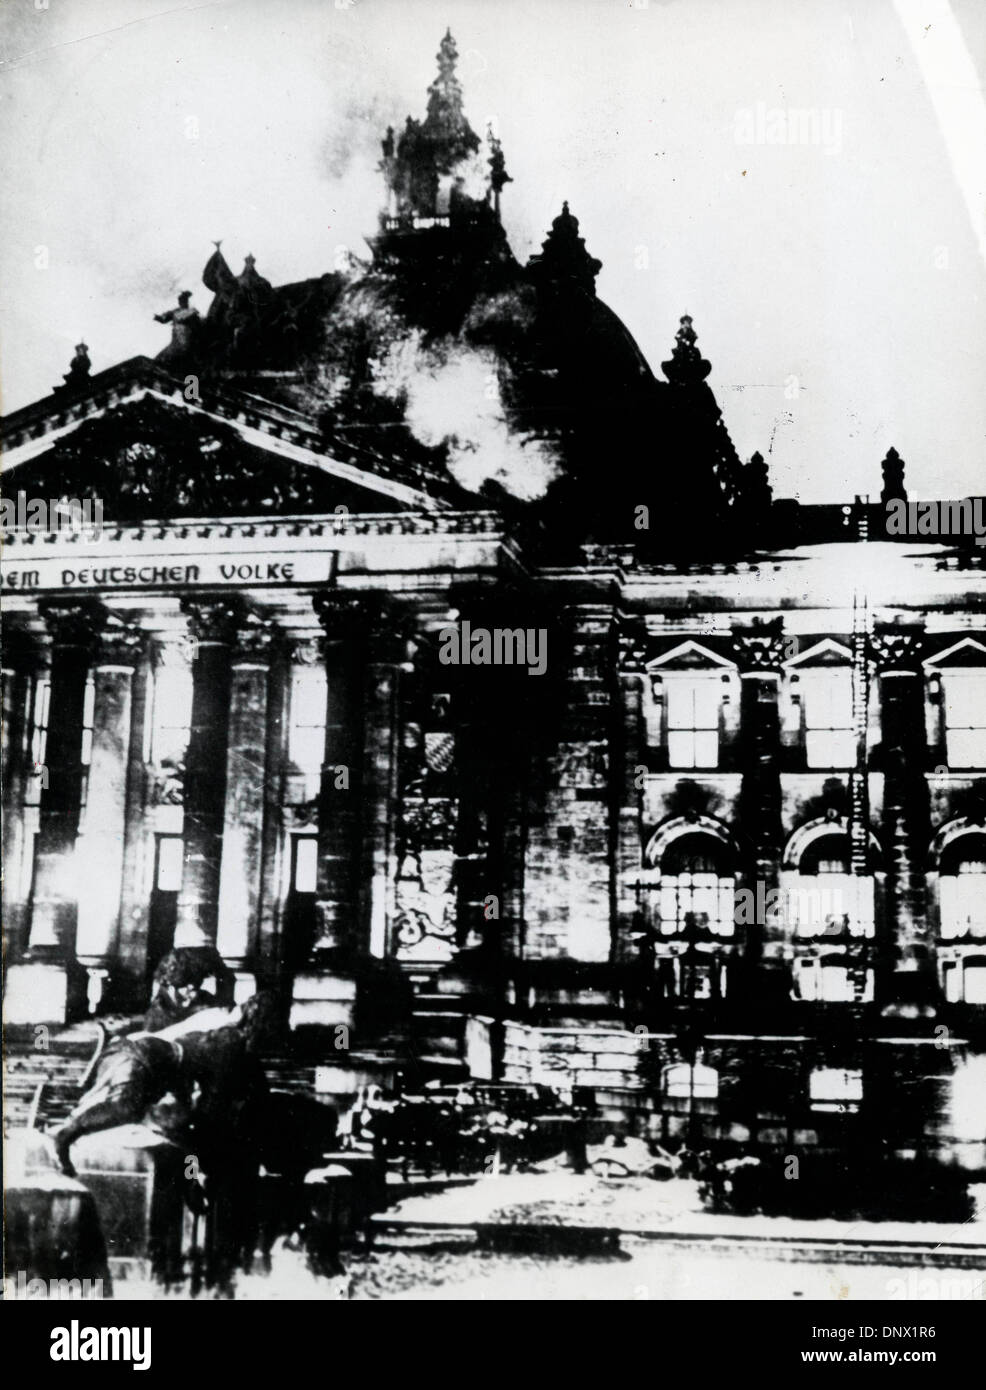 10 févr. 27, 1933 - Berlin, Allemagne - Dans la nuit du 27 février 1933, Berlin a été secoué par un incendie qui a ouvert par le Reichstag, la chambre du parlement allemand. (Crédit Image : © Keystone Photos USA/ZUMAPRESS.com) Banque D'Images